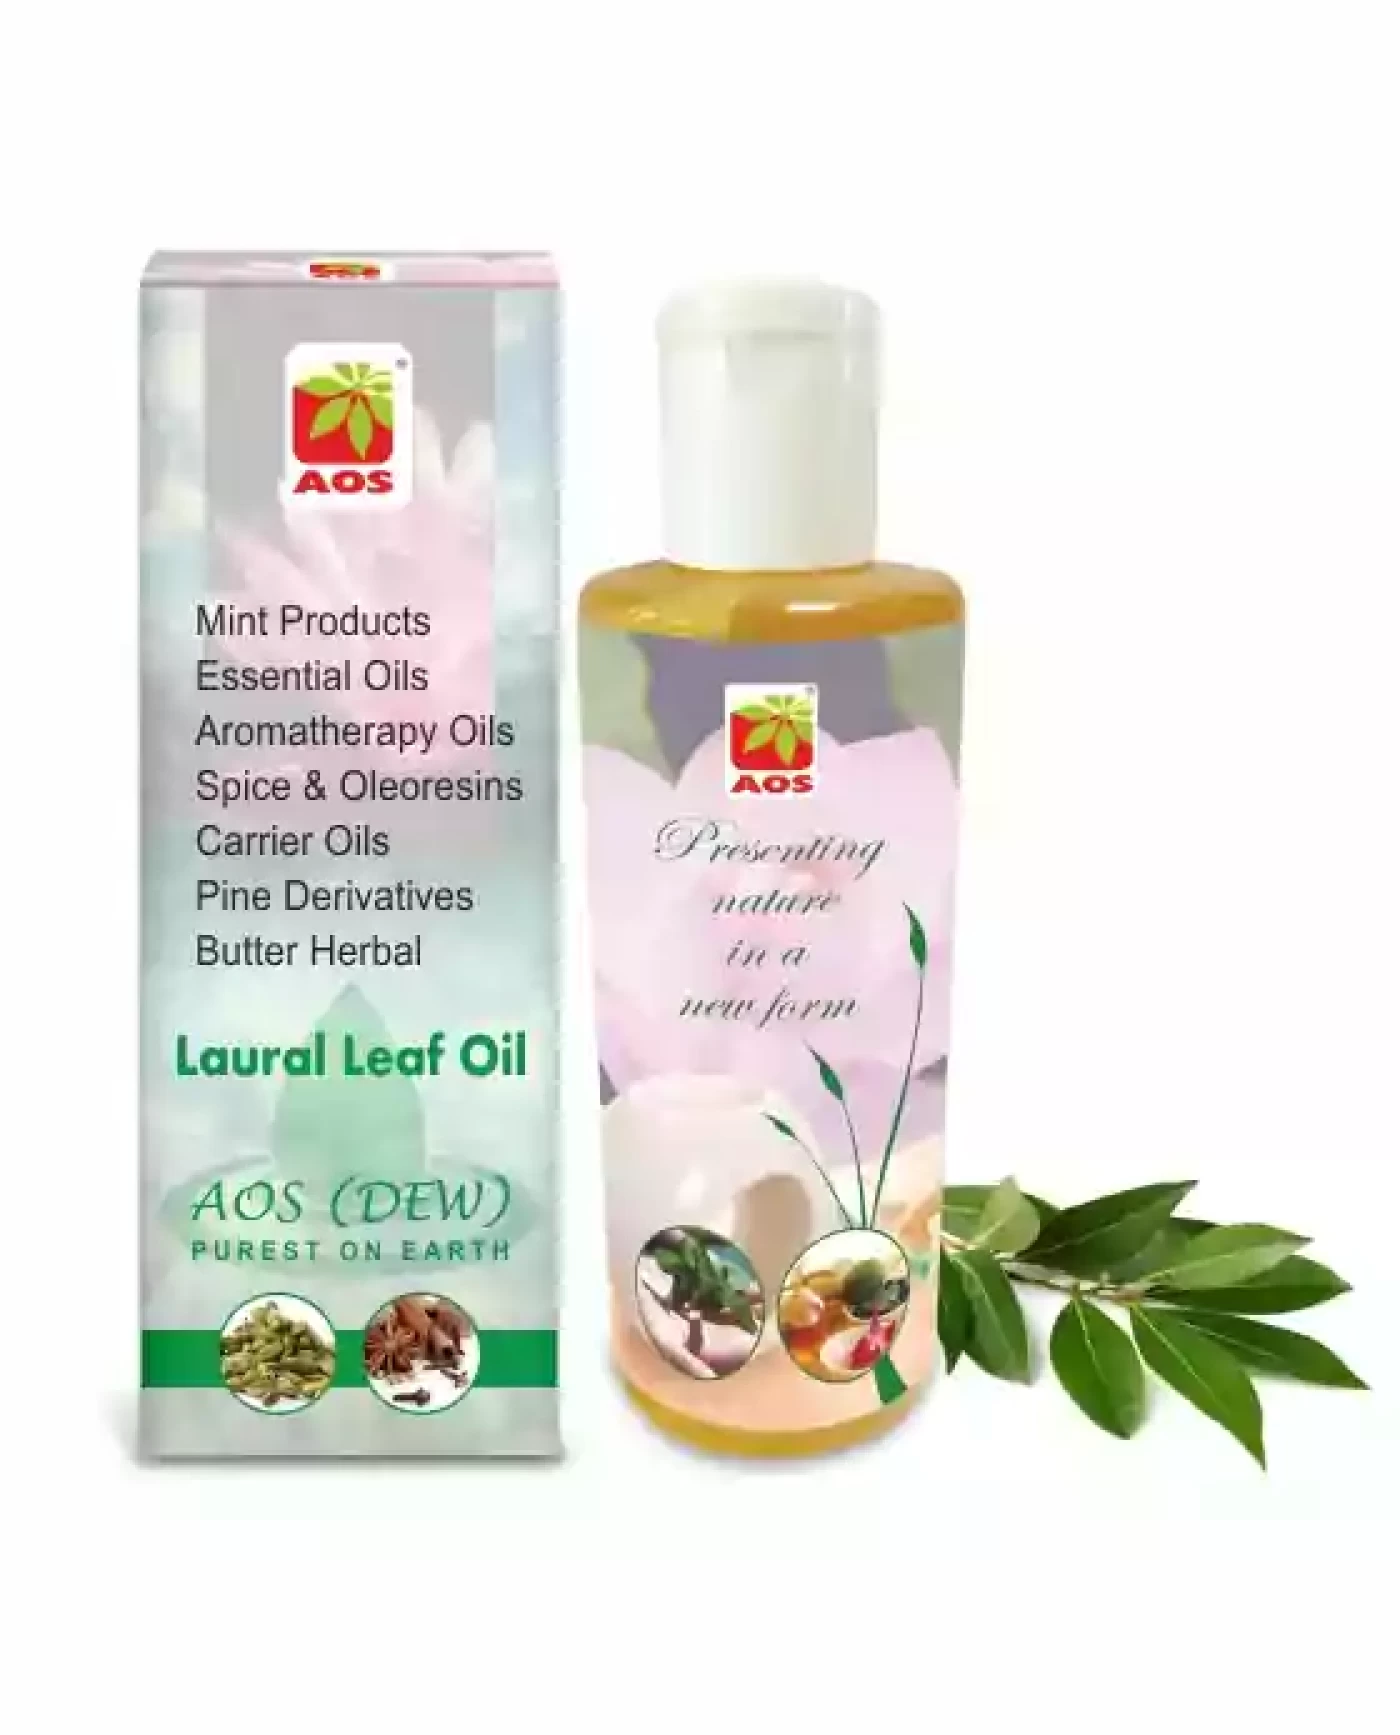 Laural Leaf Oil